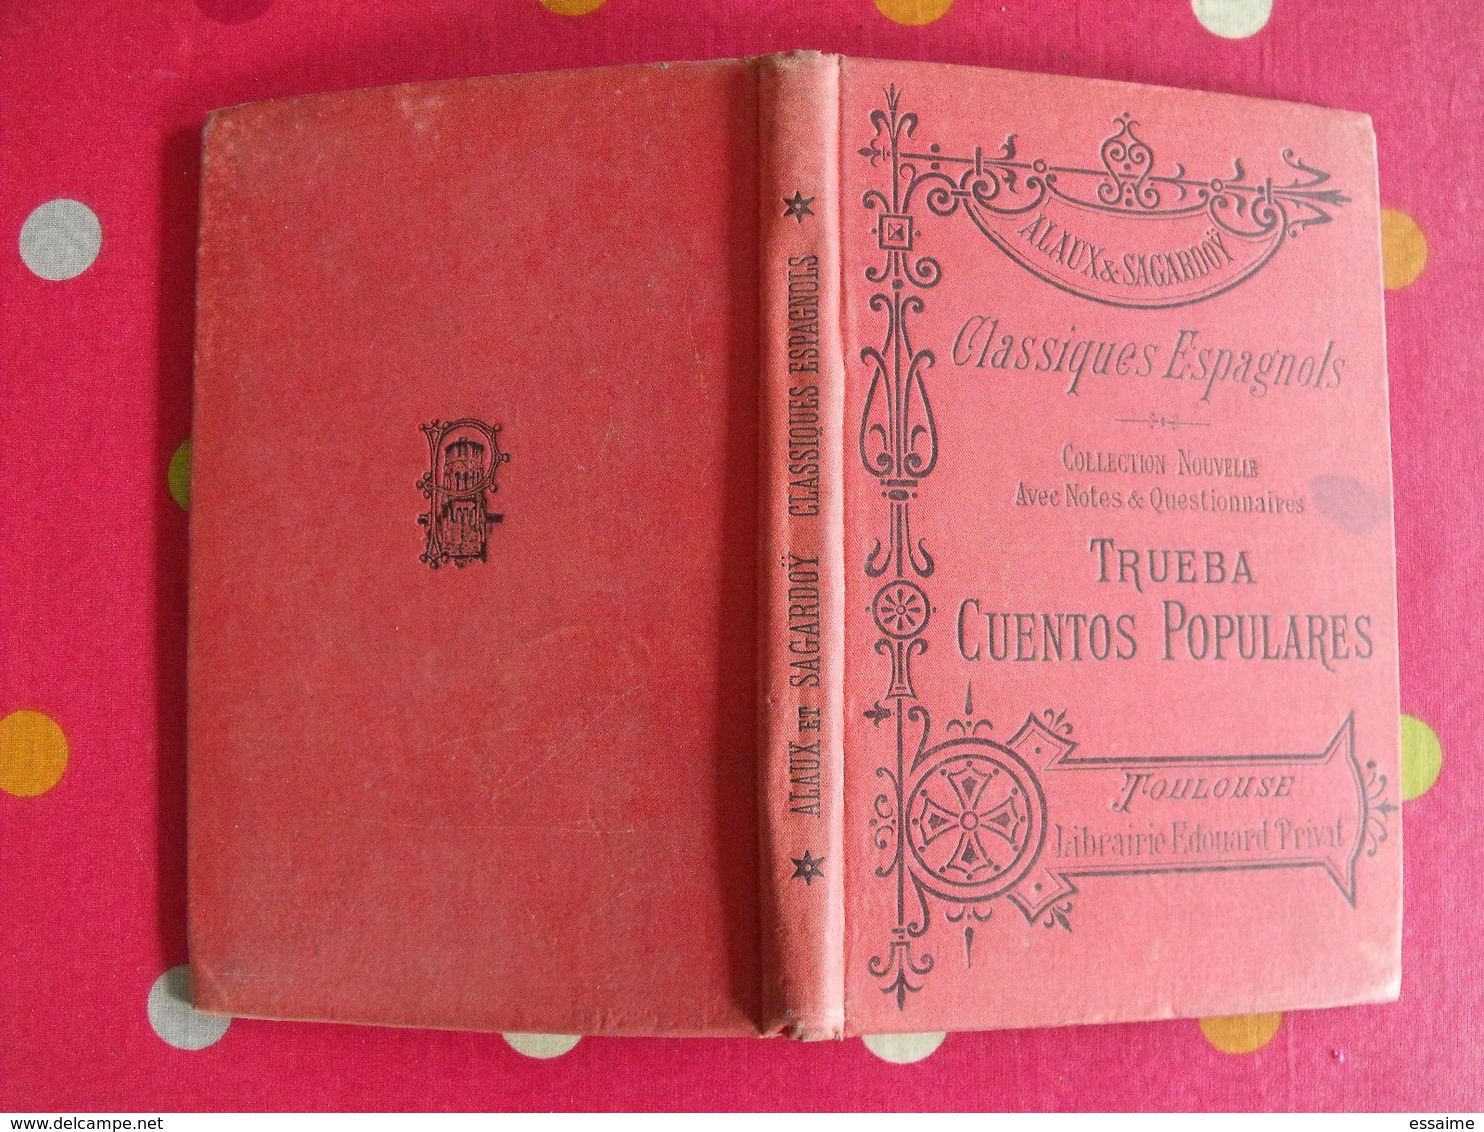 lot de 11 livres scolaires ou pédagogiques en Espagnol. espana. espagne. entre 1897 et 1968